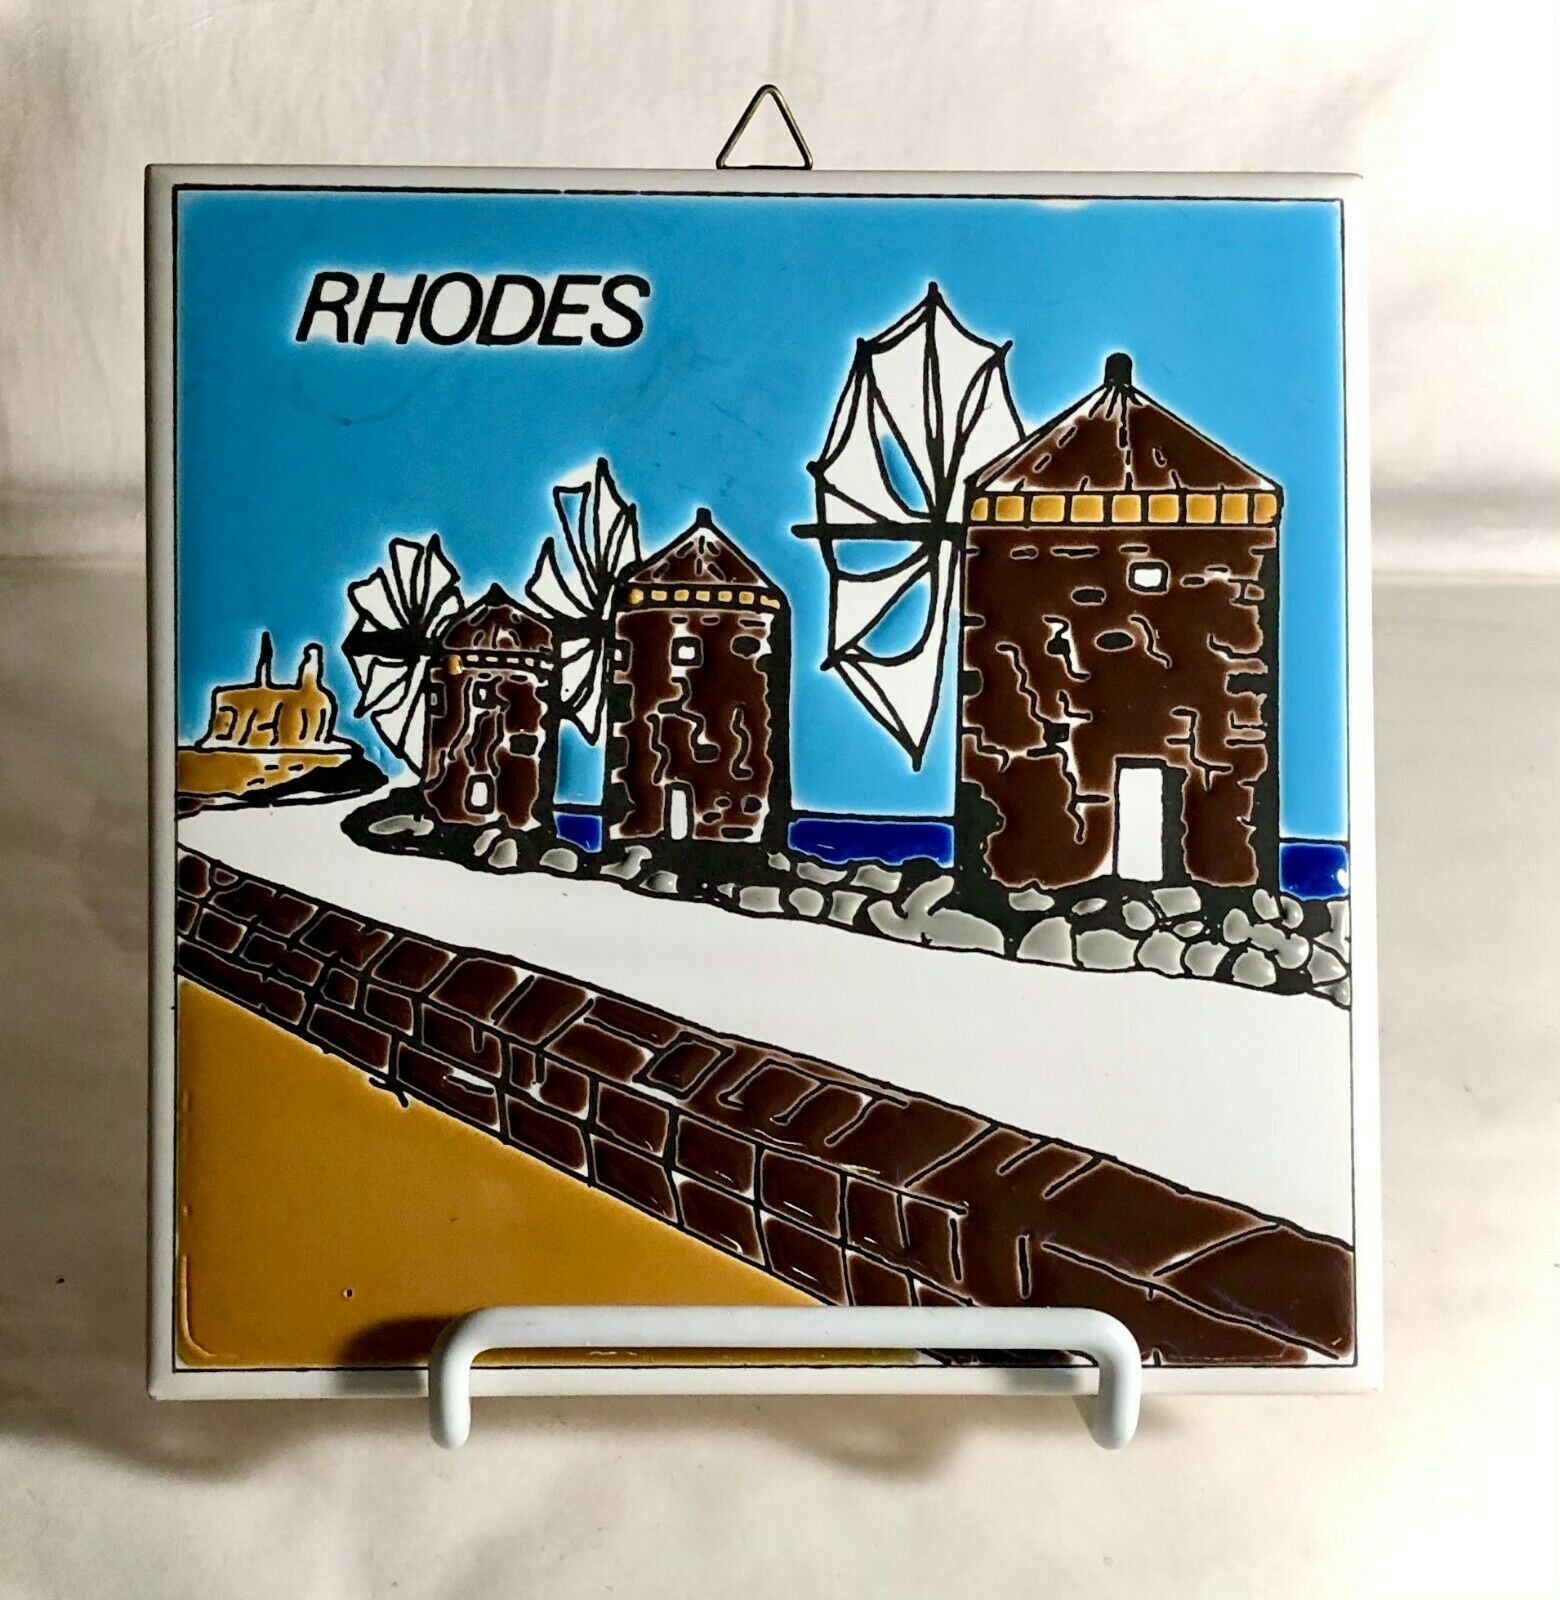 Rhodes Souvenir Ceramic 5 7/8" Tile Trivet